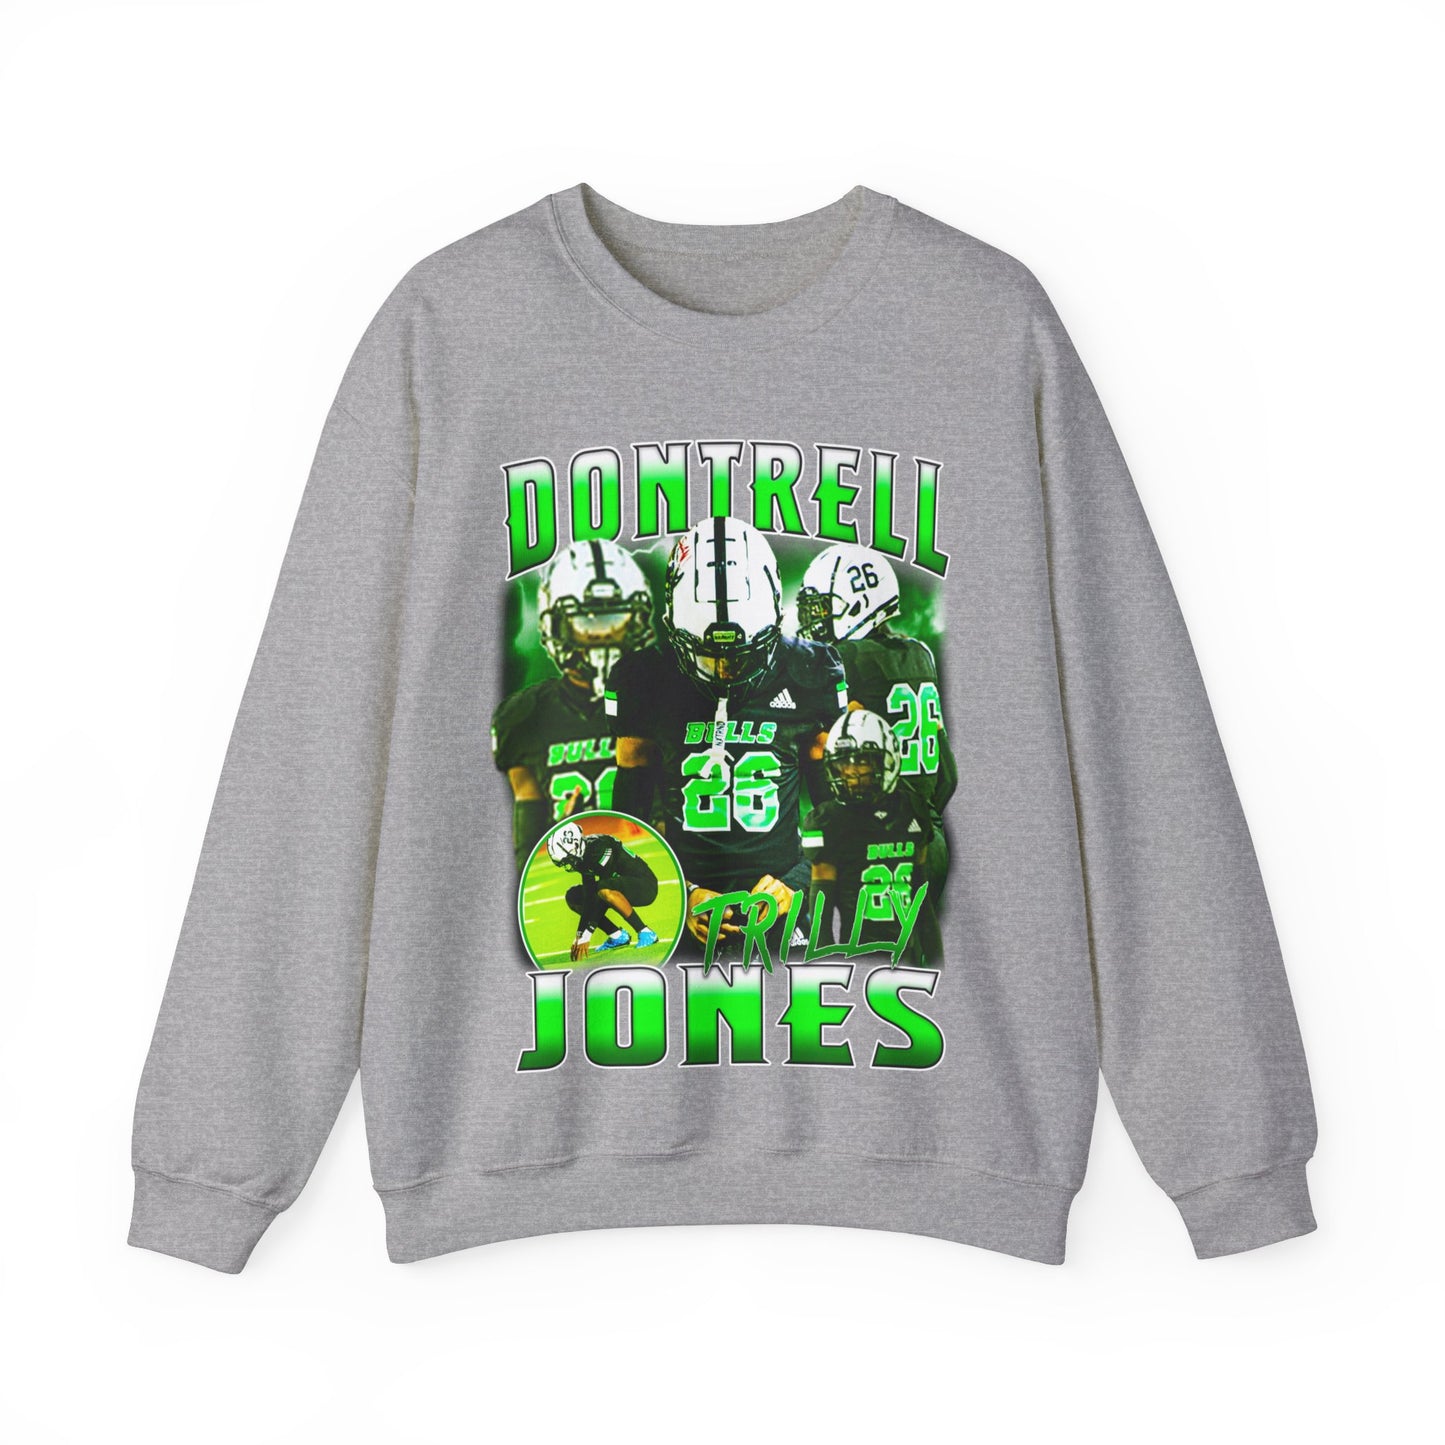 Dontrell Jones Crewneck Sweatshirt